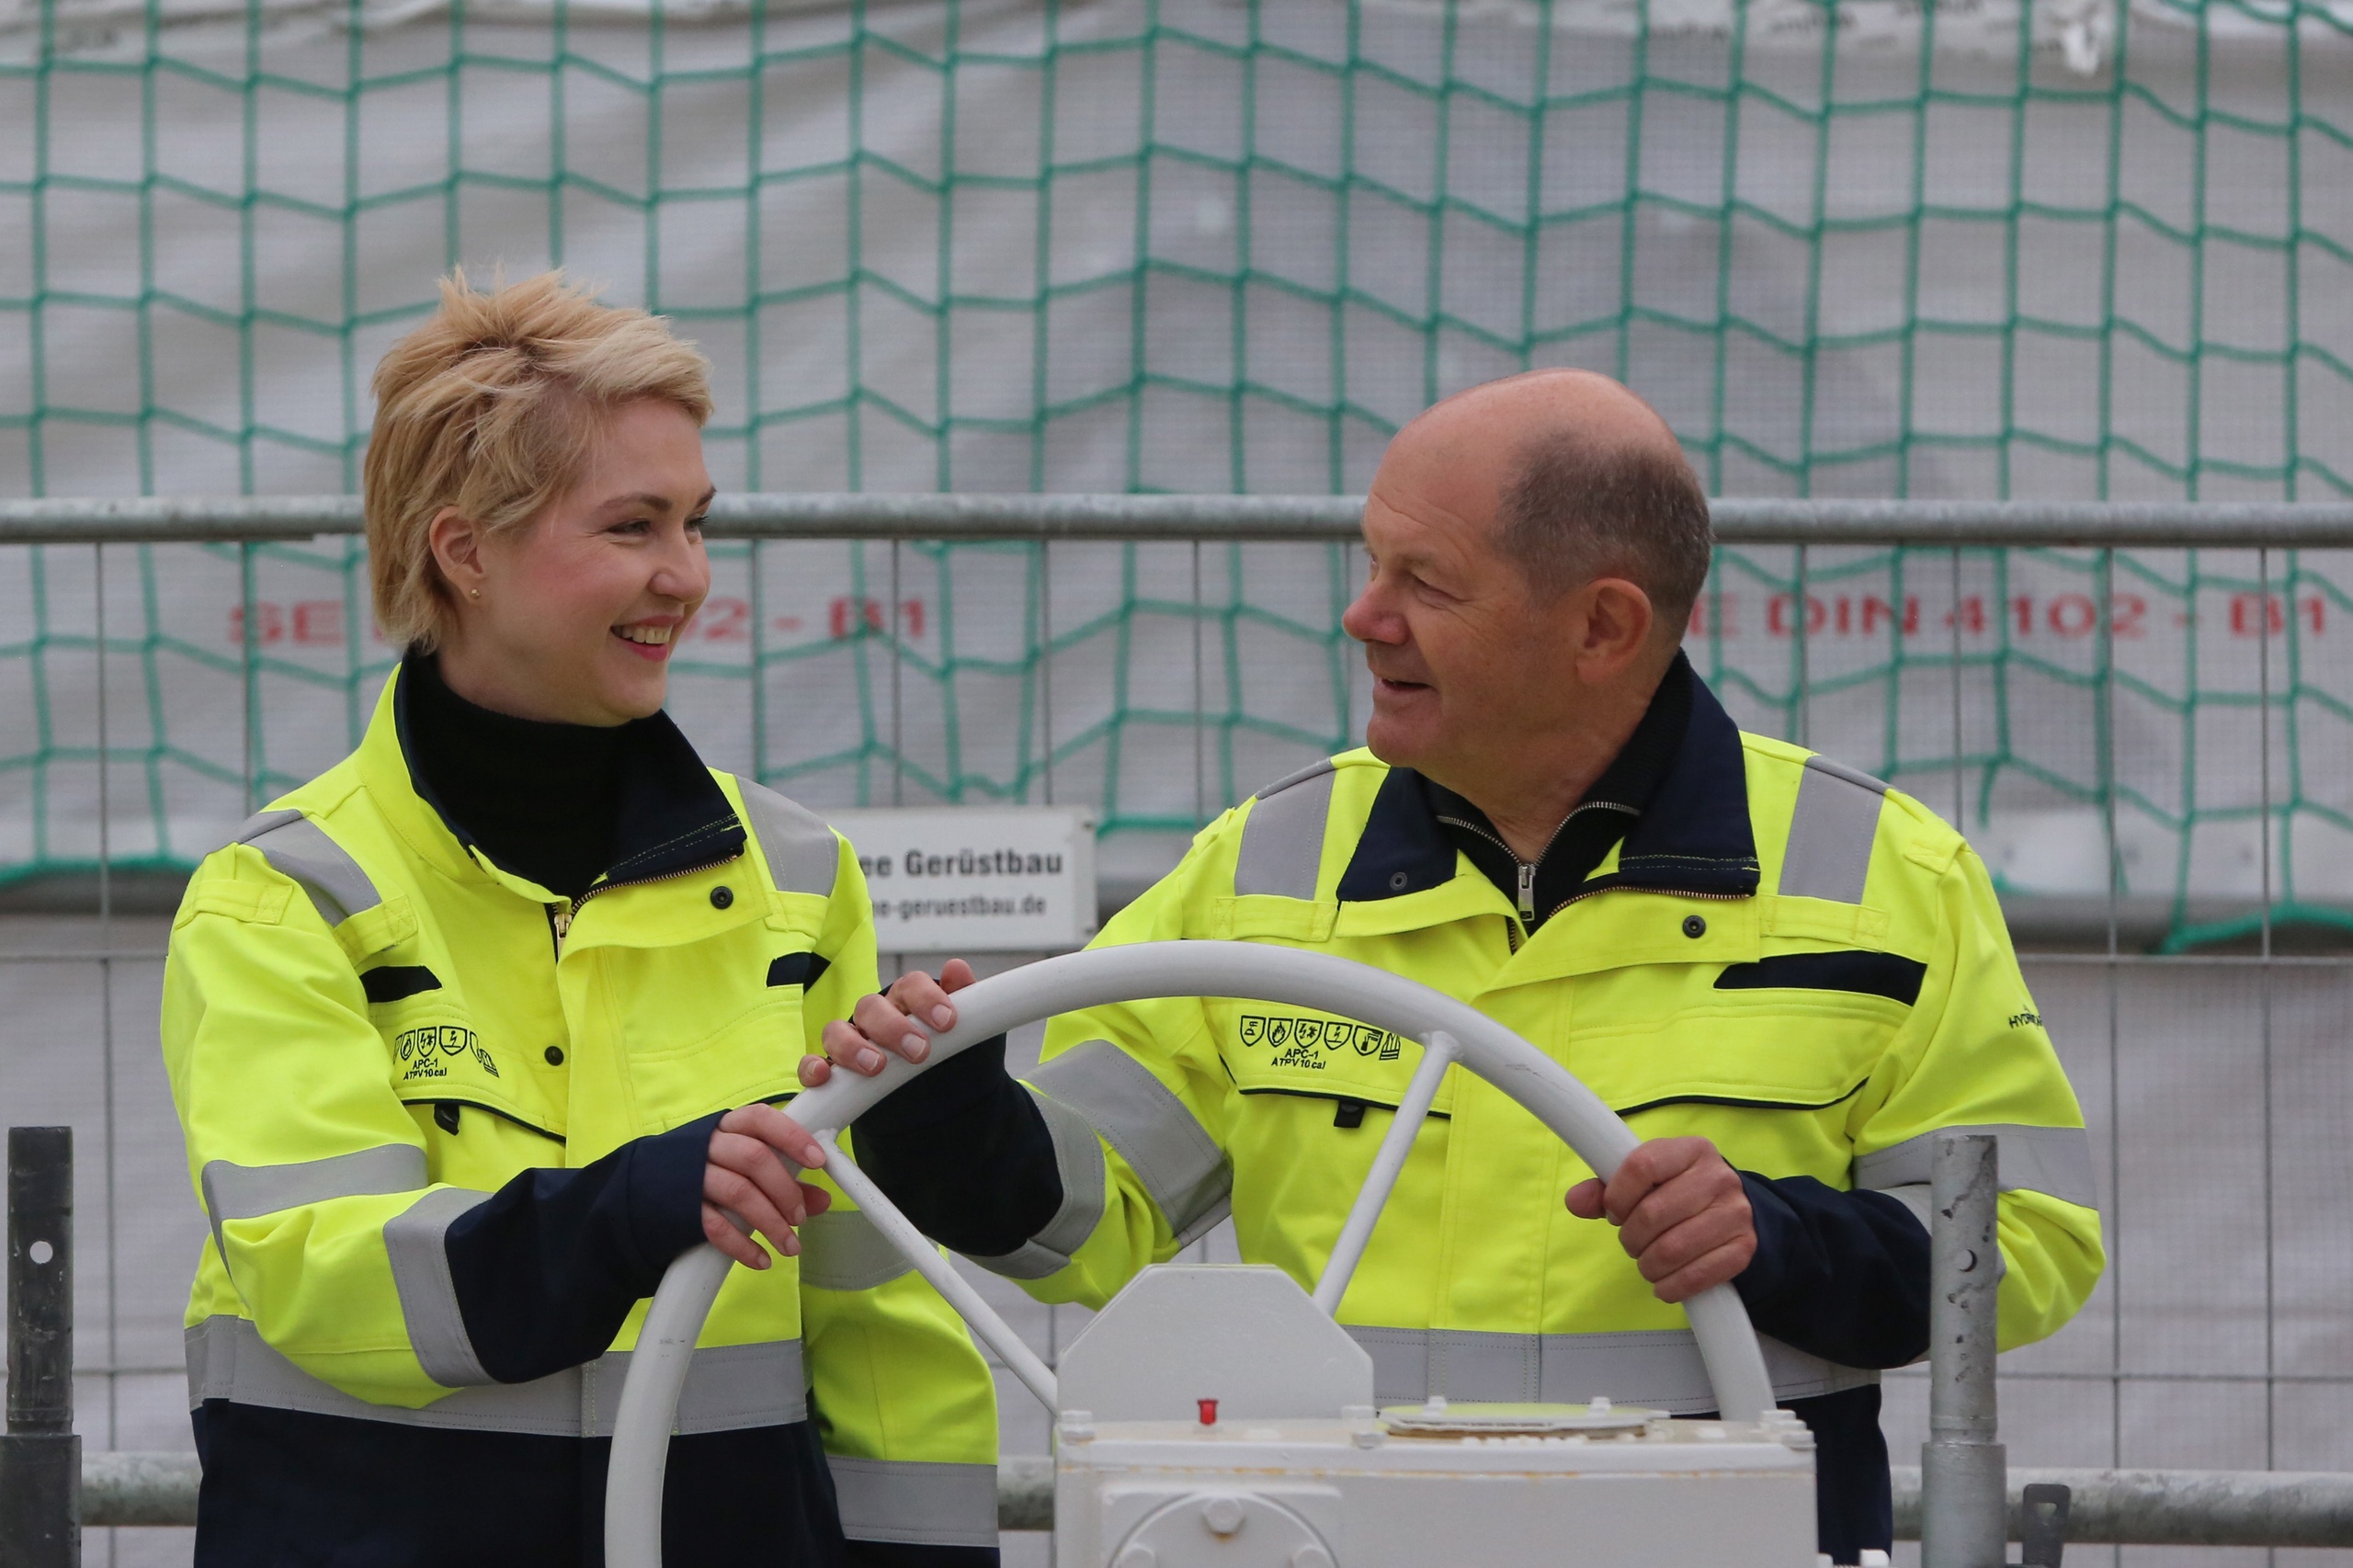 Bondkanslier Olaf Scholz en Manuela Schwesig (Mecklenburg-Vorpommern) bij de opening van een lng-terminal. Volgens de Duitse toezichthouder voor de energievoorziening moet het gasverbruik in Duitsland sneller omlaag